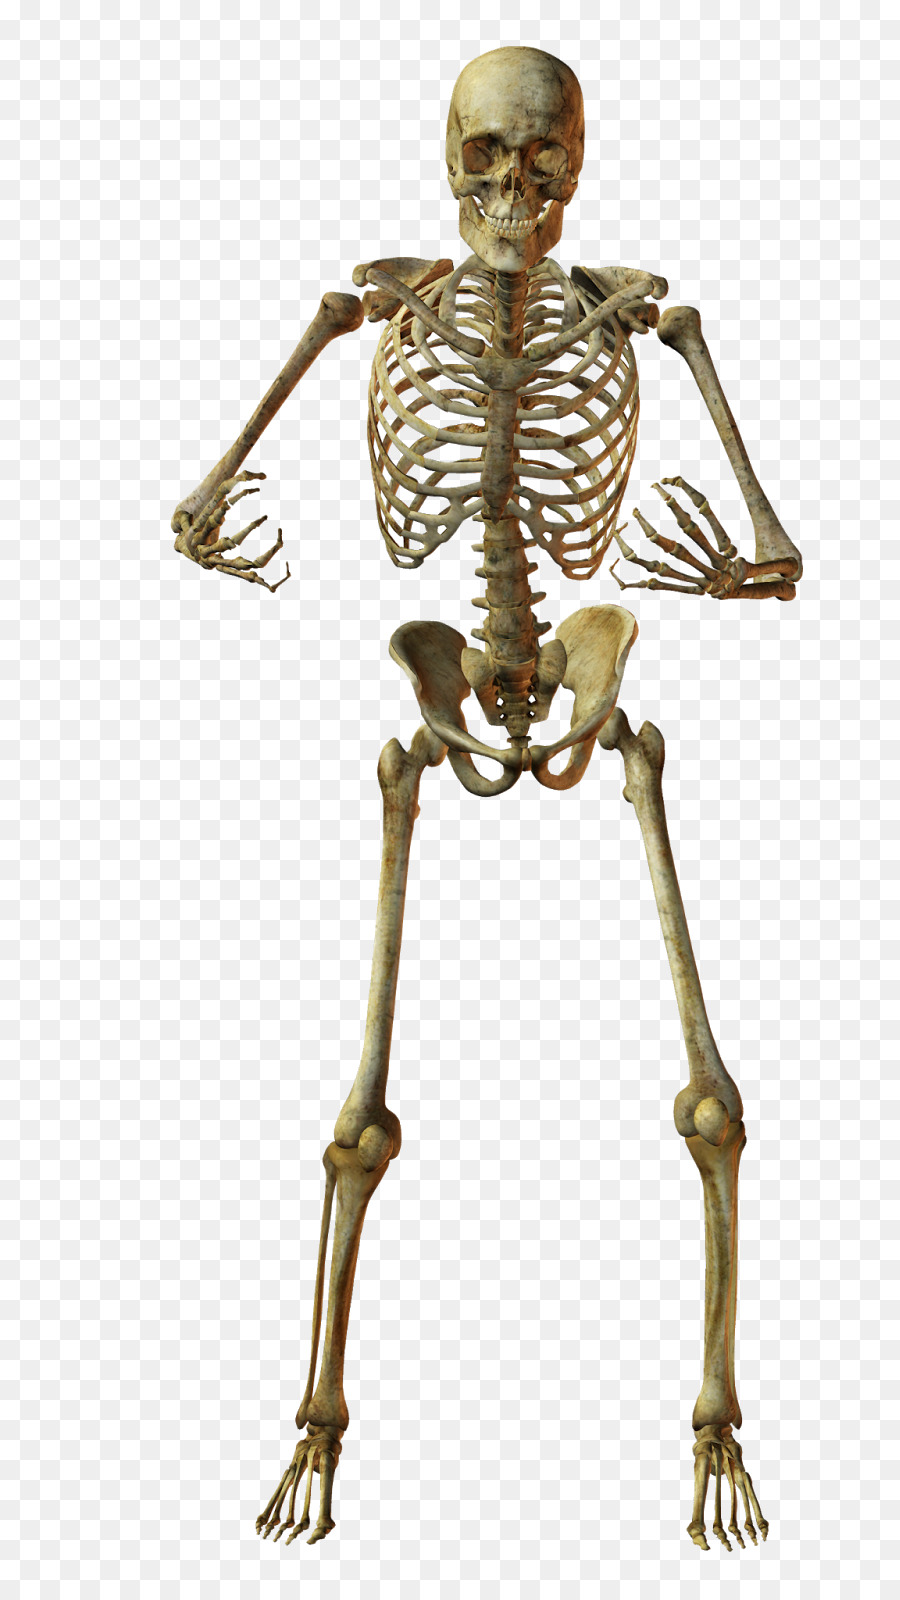 Human skeleton Bone Anatomy - Skeleton png download - 885*1600 - Free Transparent Human Skeleton png Download.